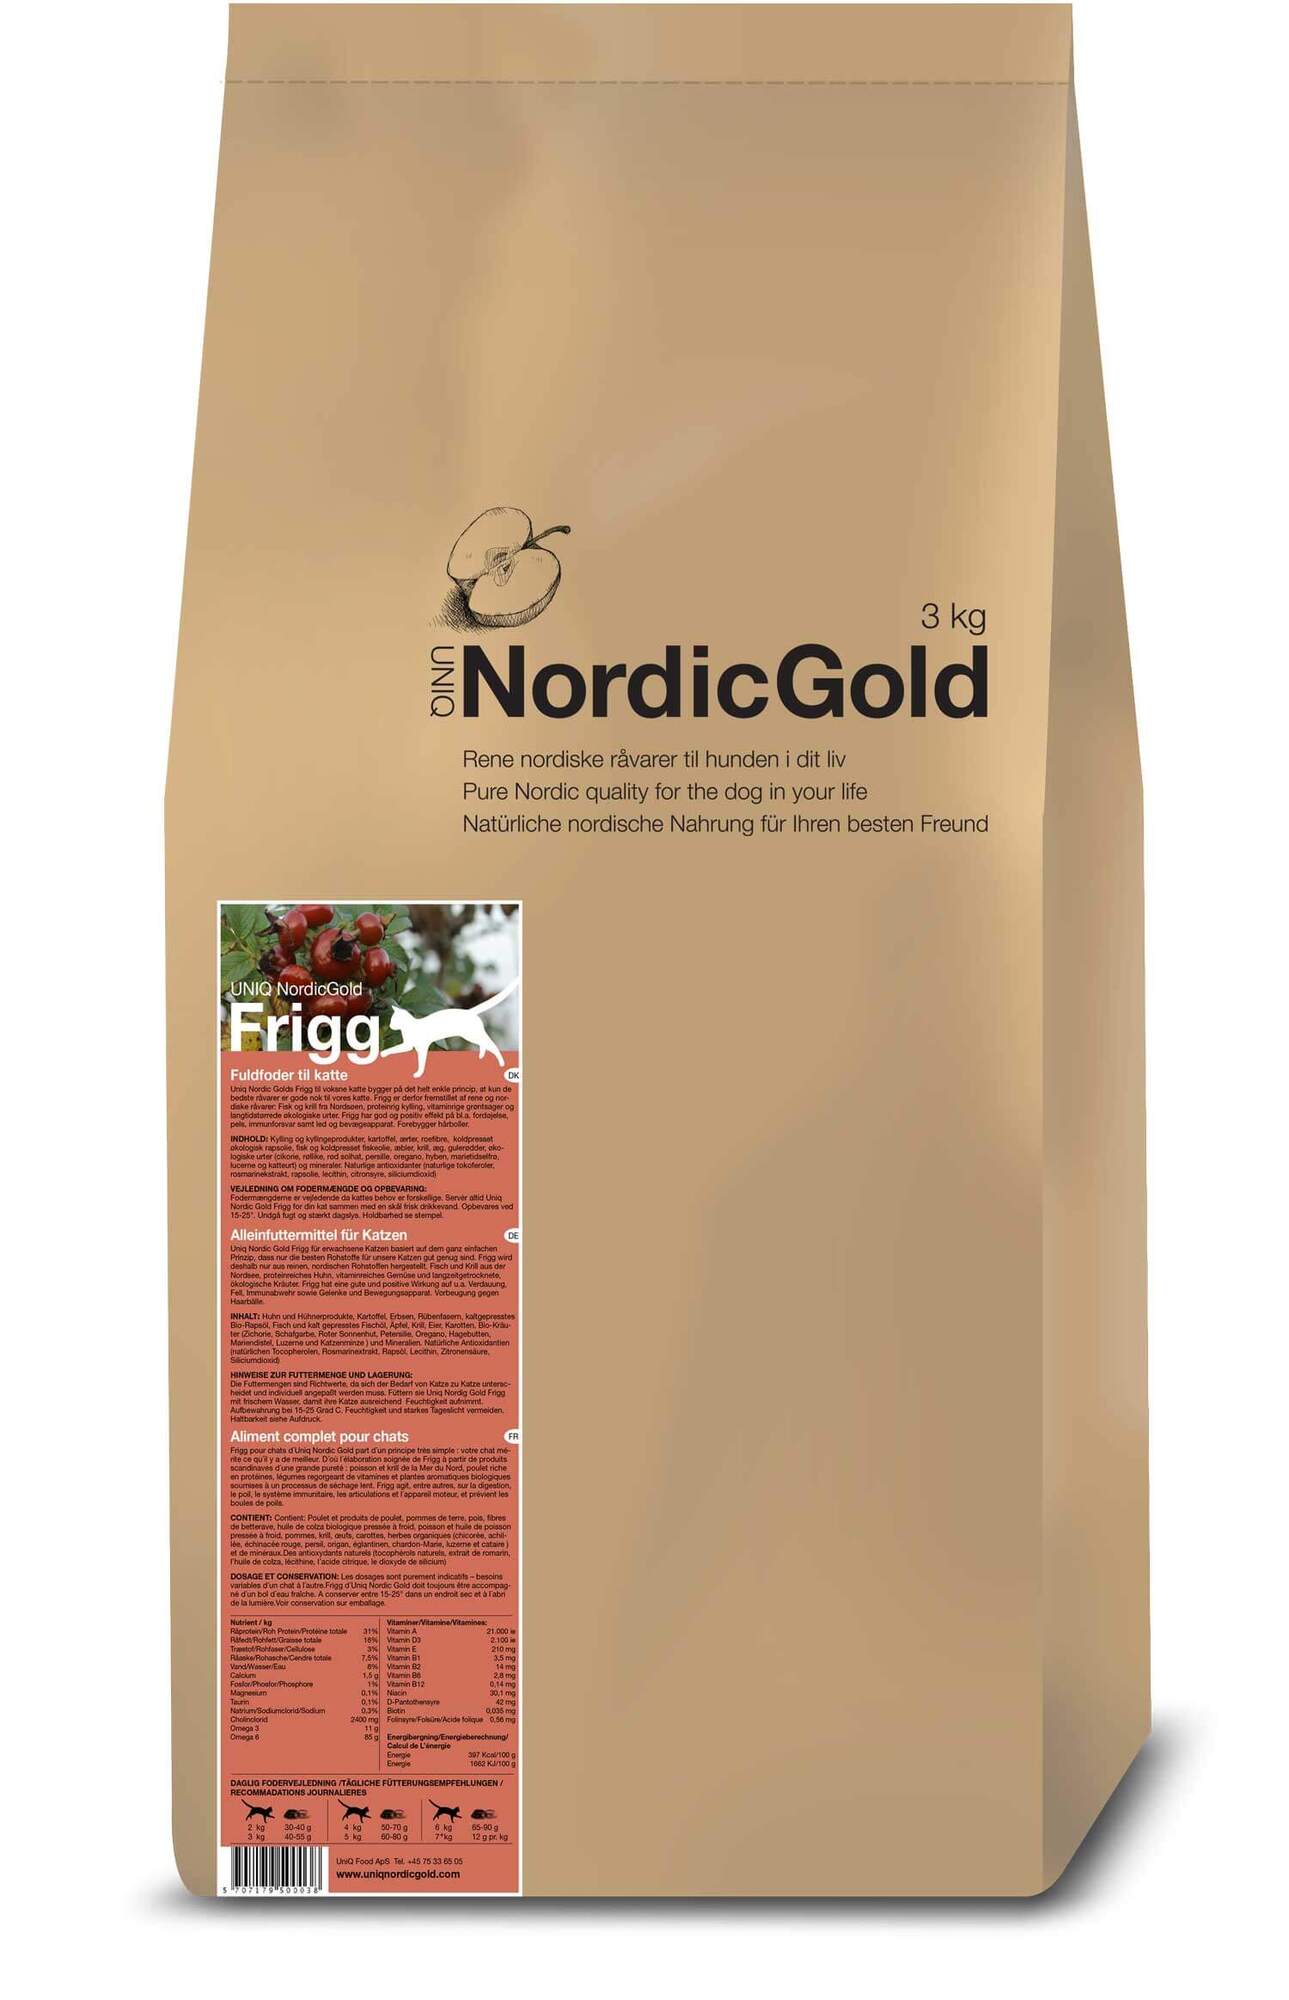 Nordic Gold Frigg - til den kræsne kat - 10 kg - Fragtfri levering - overraskelse medfølger